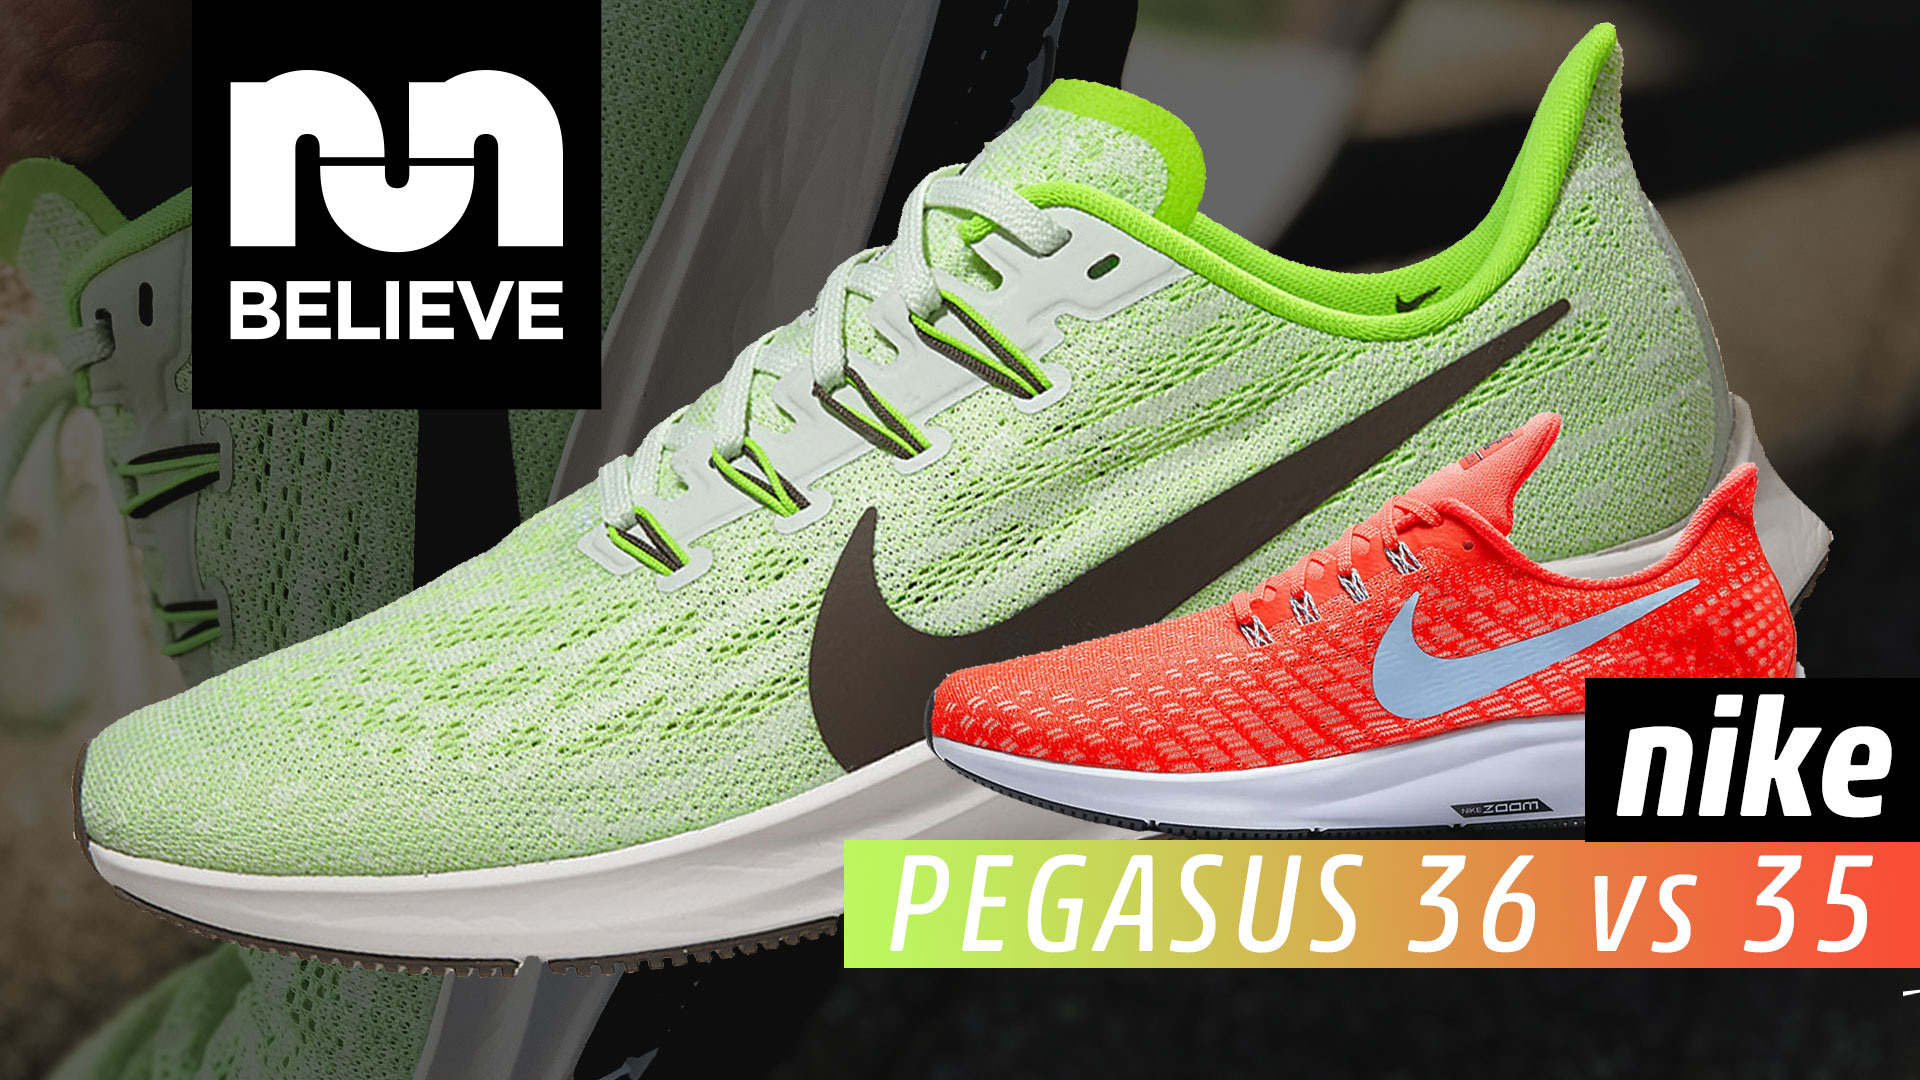 Nike Pegasus 36 vs Pegasus 35 Comparison Review » Believe in the Run